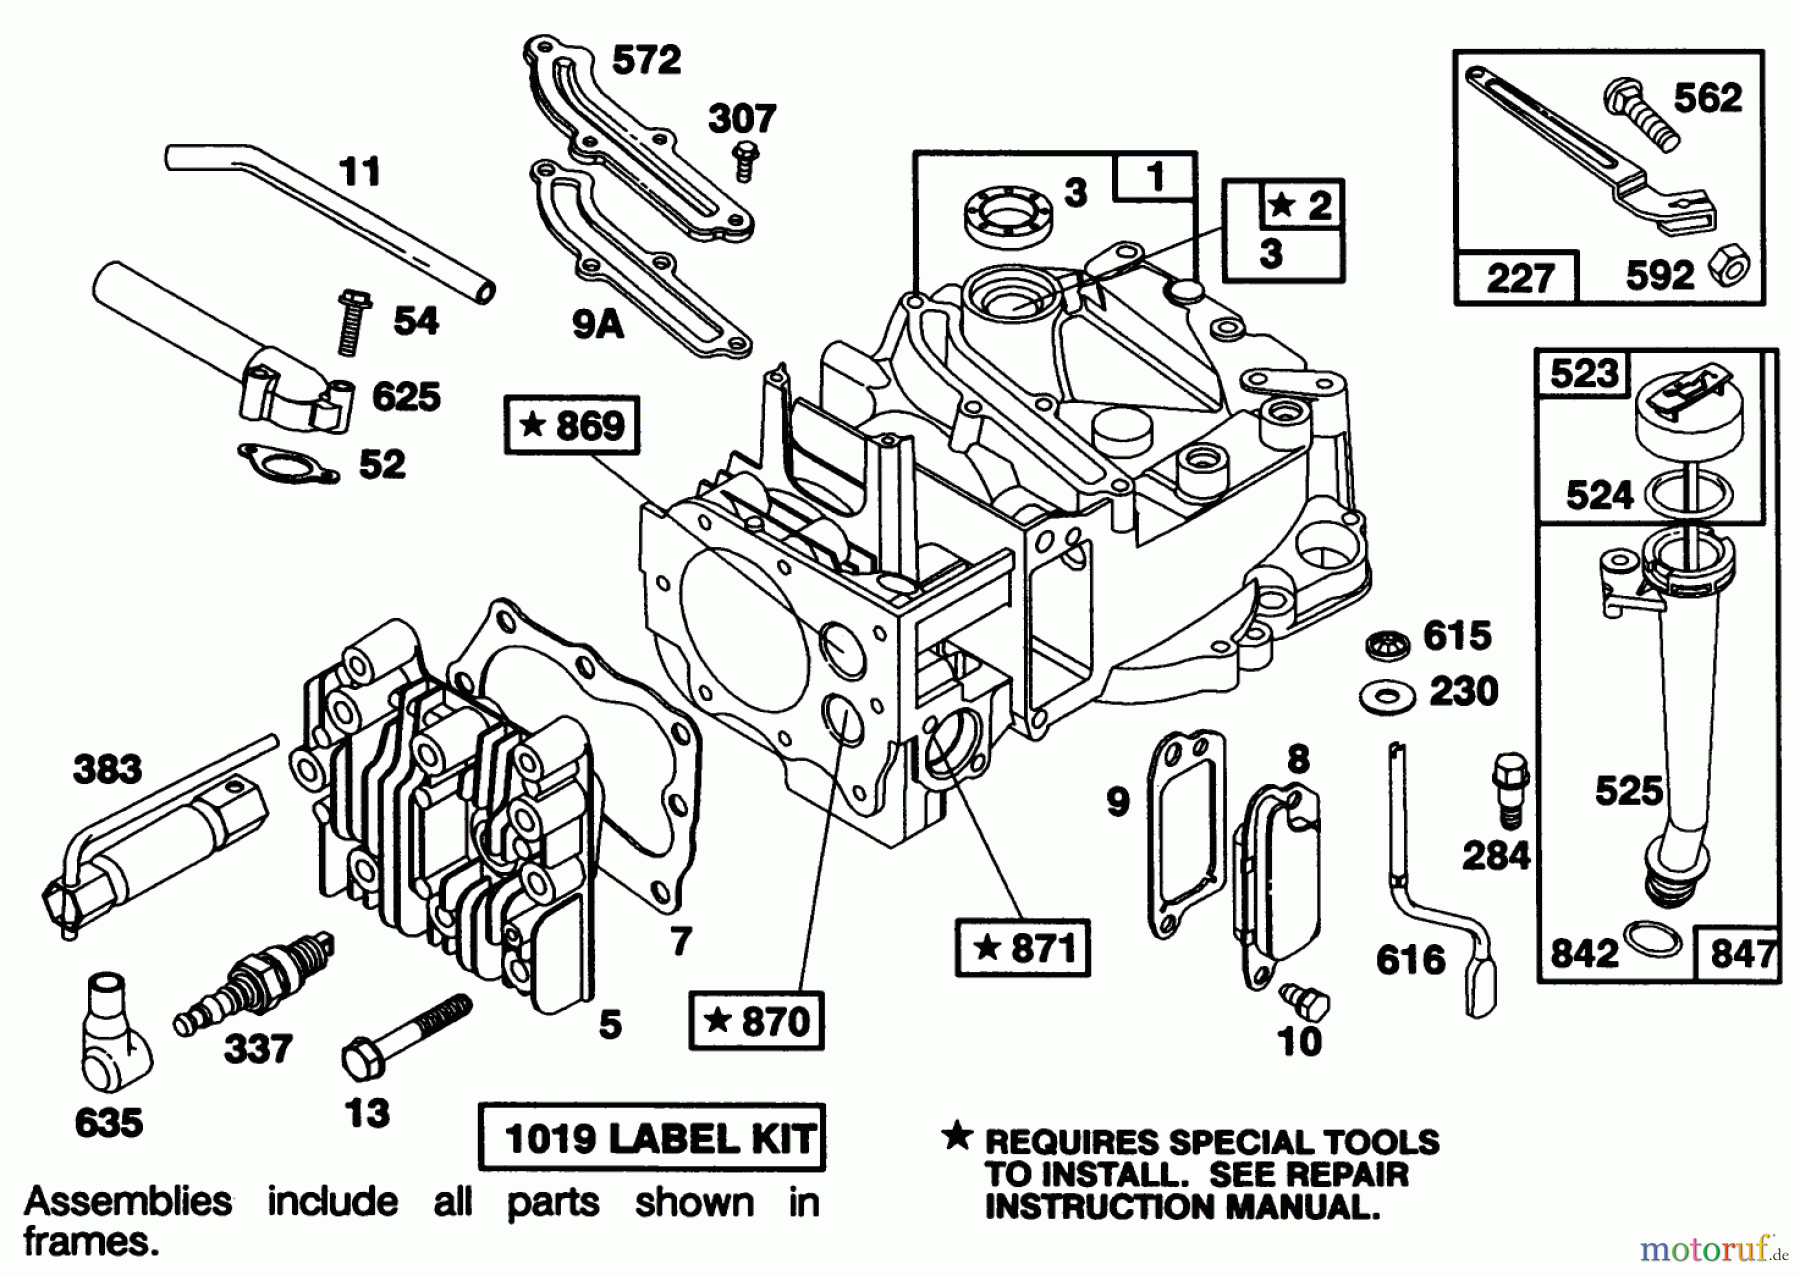  Toro Neu Mowers, Walk-Behind Seite 1 20215 - Toro Lawnmower, 1991 (1000001-1999999) ENGINE BRIGGS & STRATTON MODEL 122702-3171-01 #1